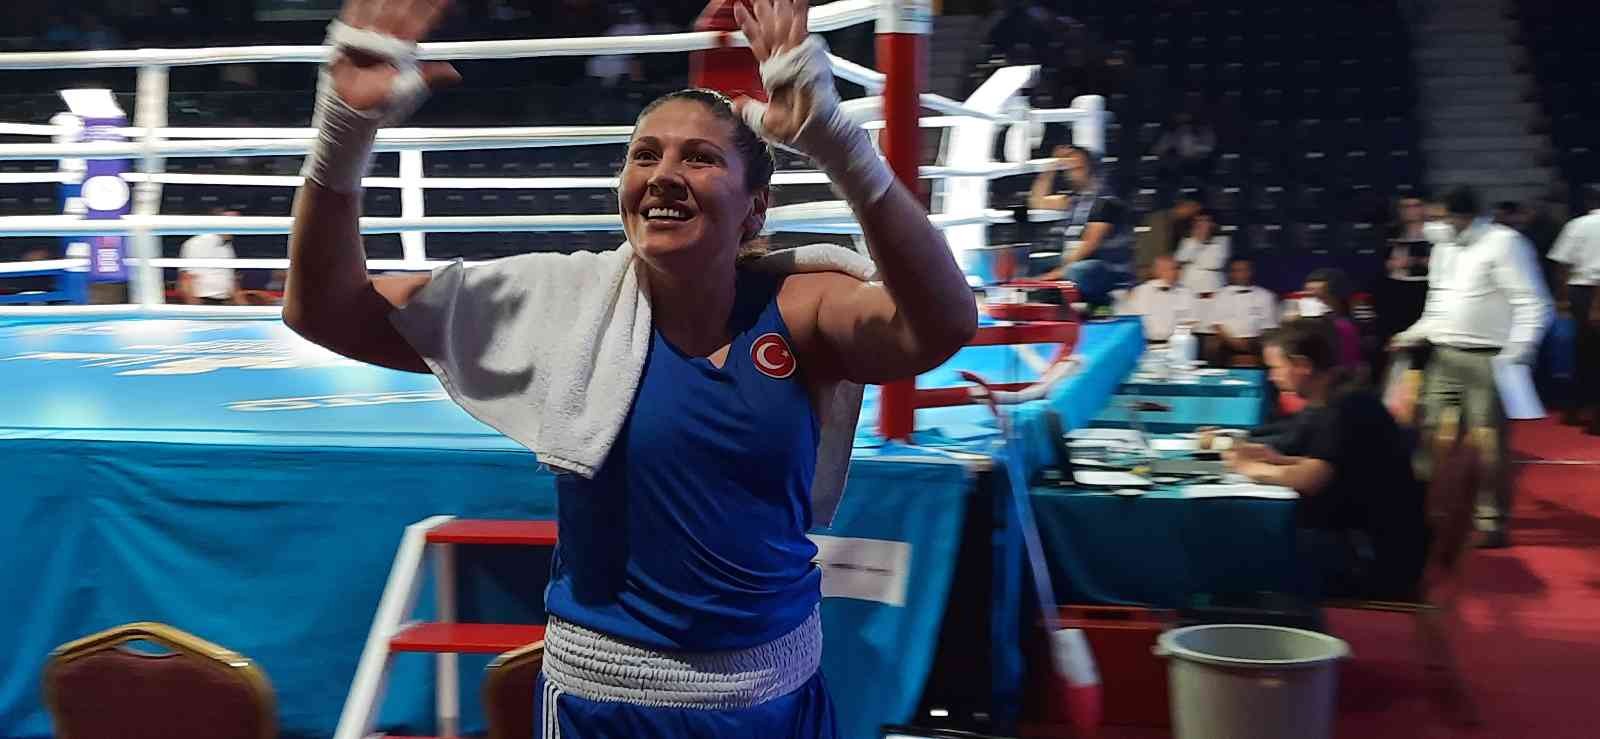 Türkiye’nin ev sahipliğinde düzenlenen Dünya Kadınlar Boks Şampiyonası’nda 81 kiloda mücadele eden Şennur Demir, adını yarı finale yazdırdı ...